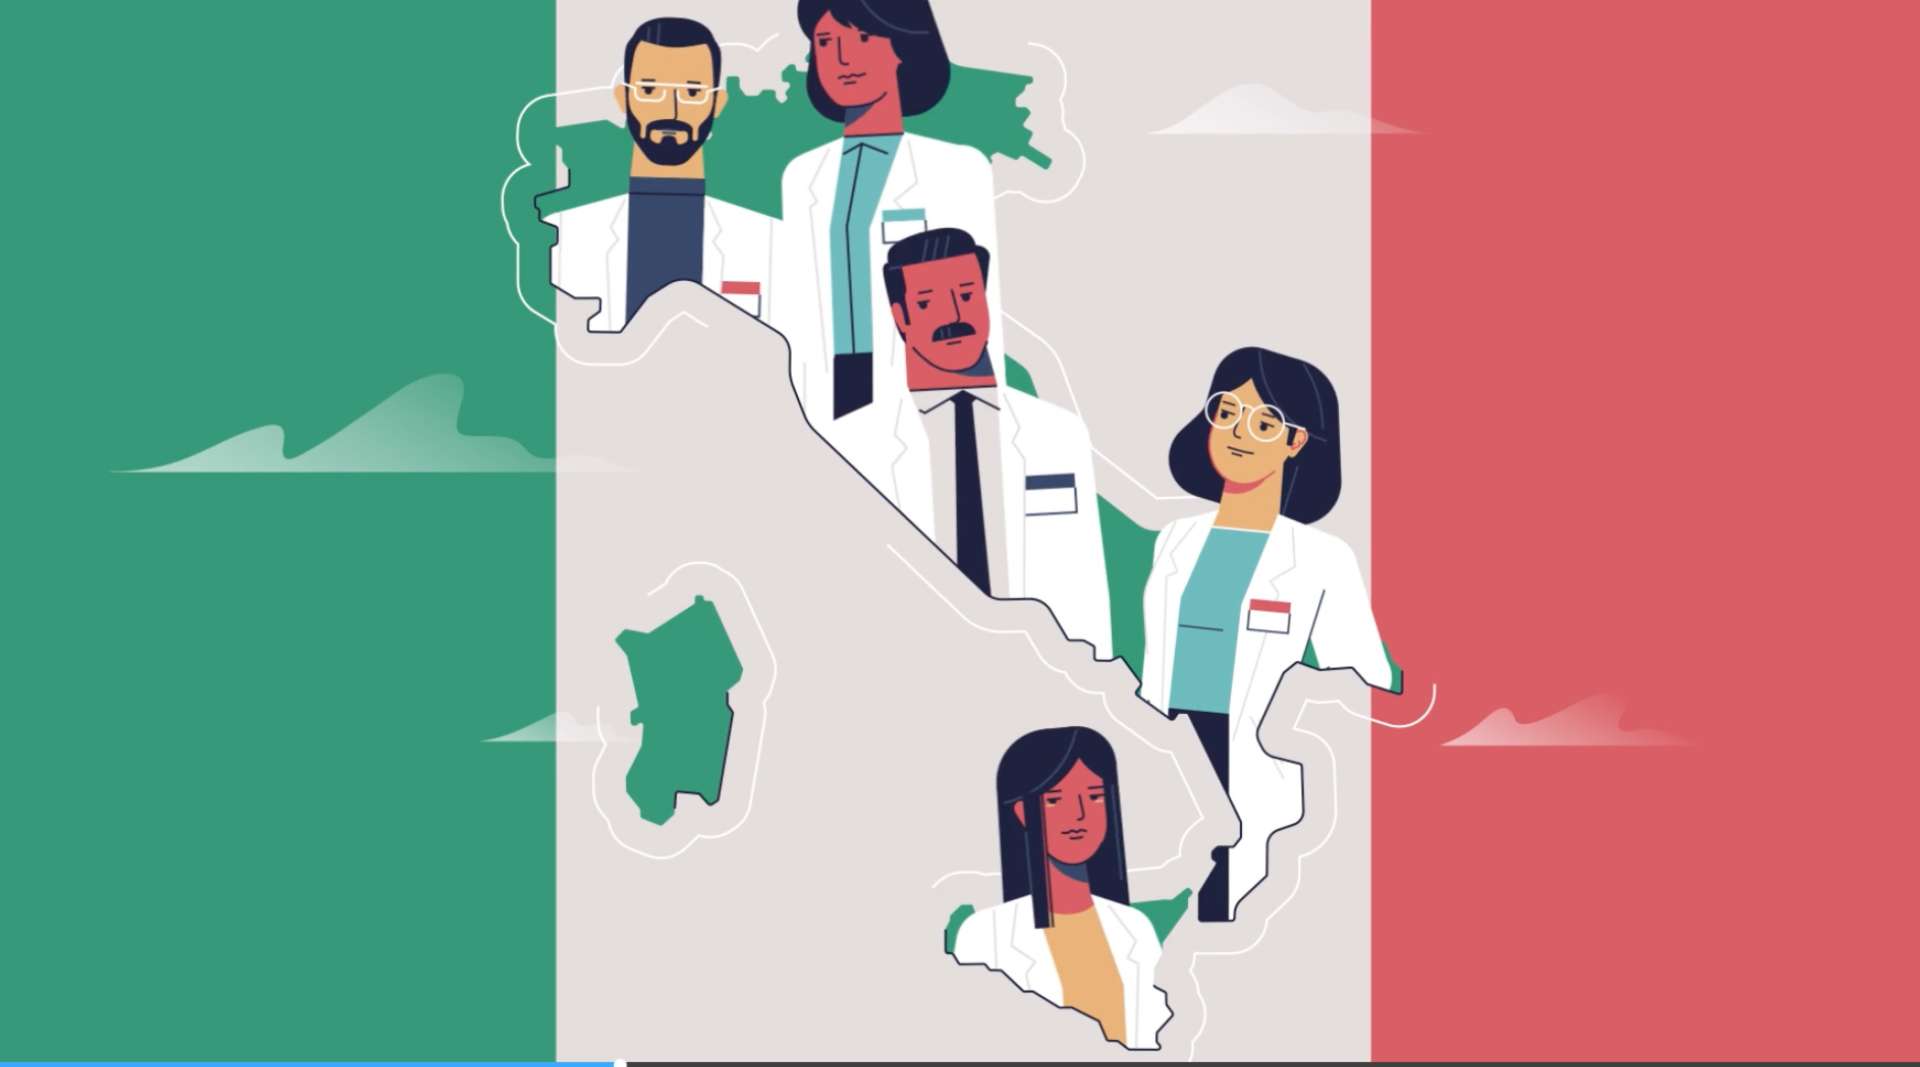 意大利创业公司Doctorsinitaly的60秒动画